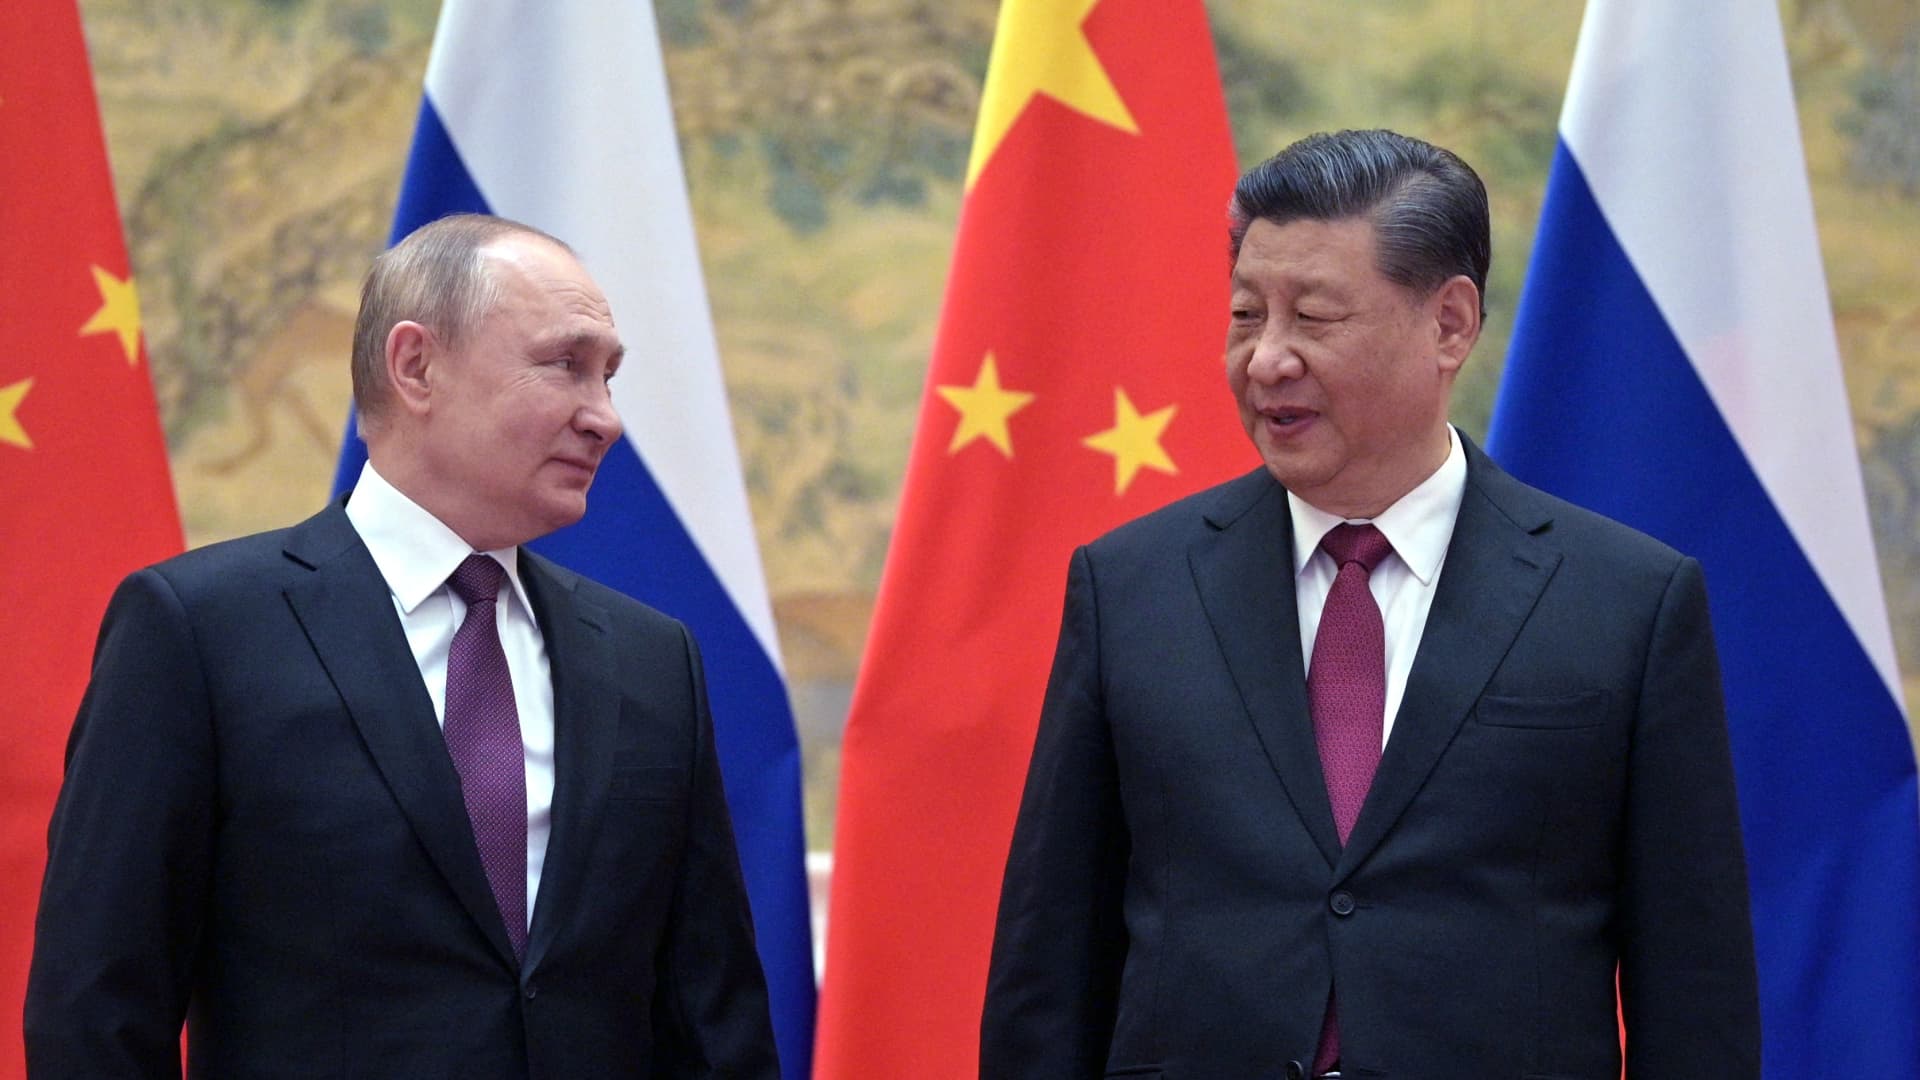 تواصل مع الصين وروسيا بلا حدود مع حبة ملح: Lee Daokai